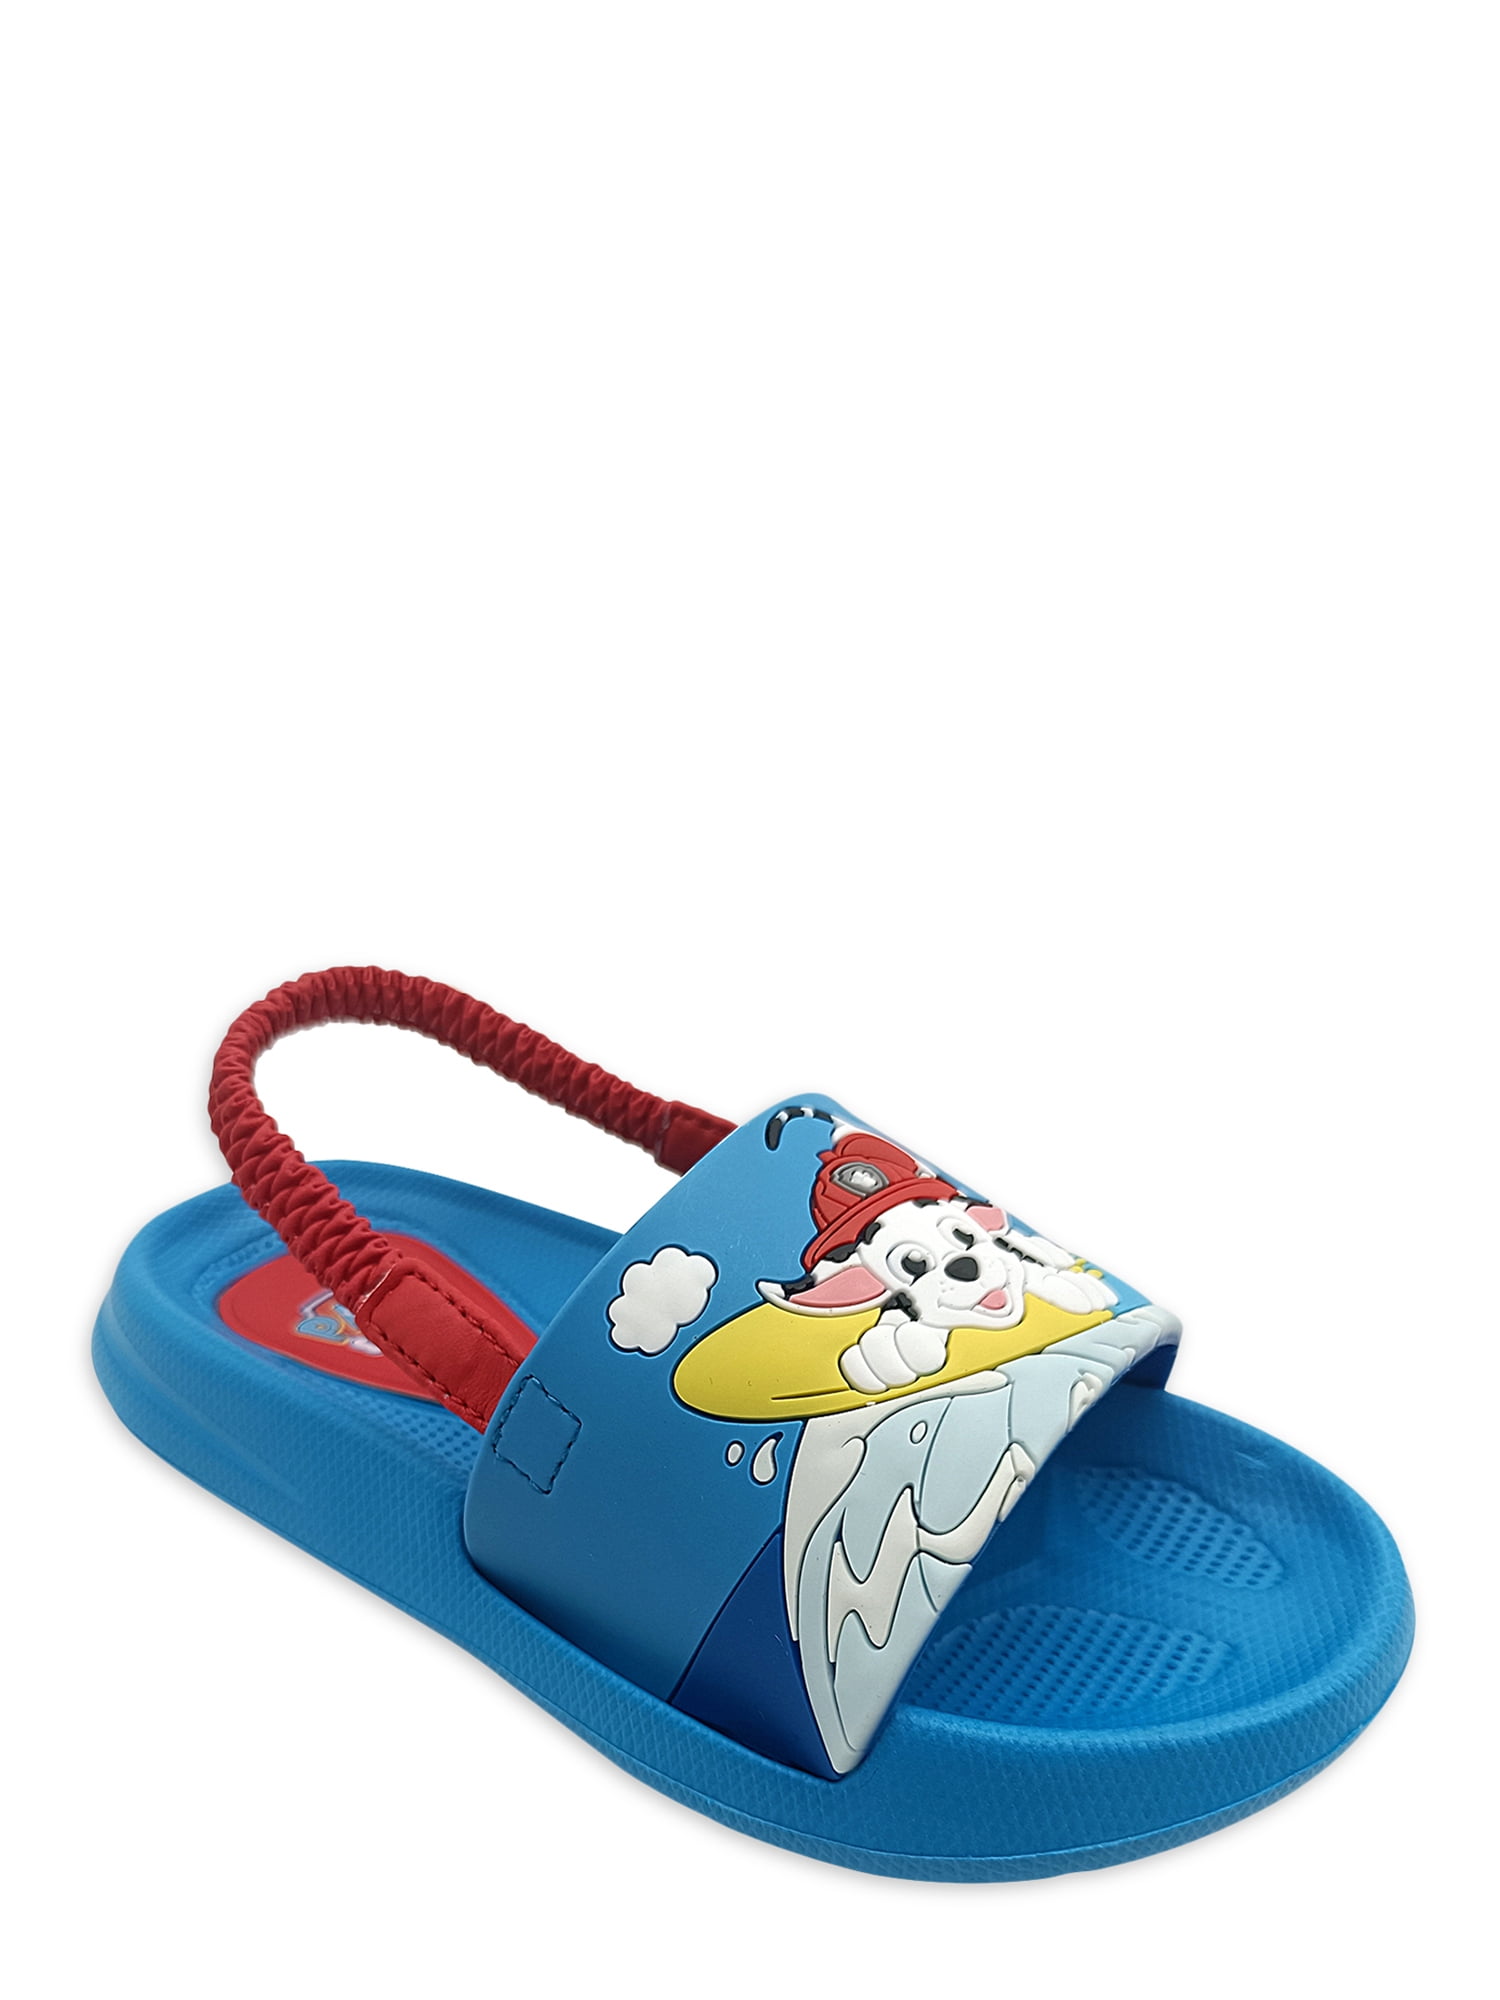 Kids Summer Slipper Cats Crescent Night House Slippers Shower Slide Anti-Slip Beach Pool Bath Sandals for Boys Girls 